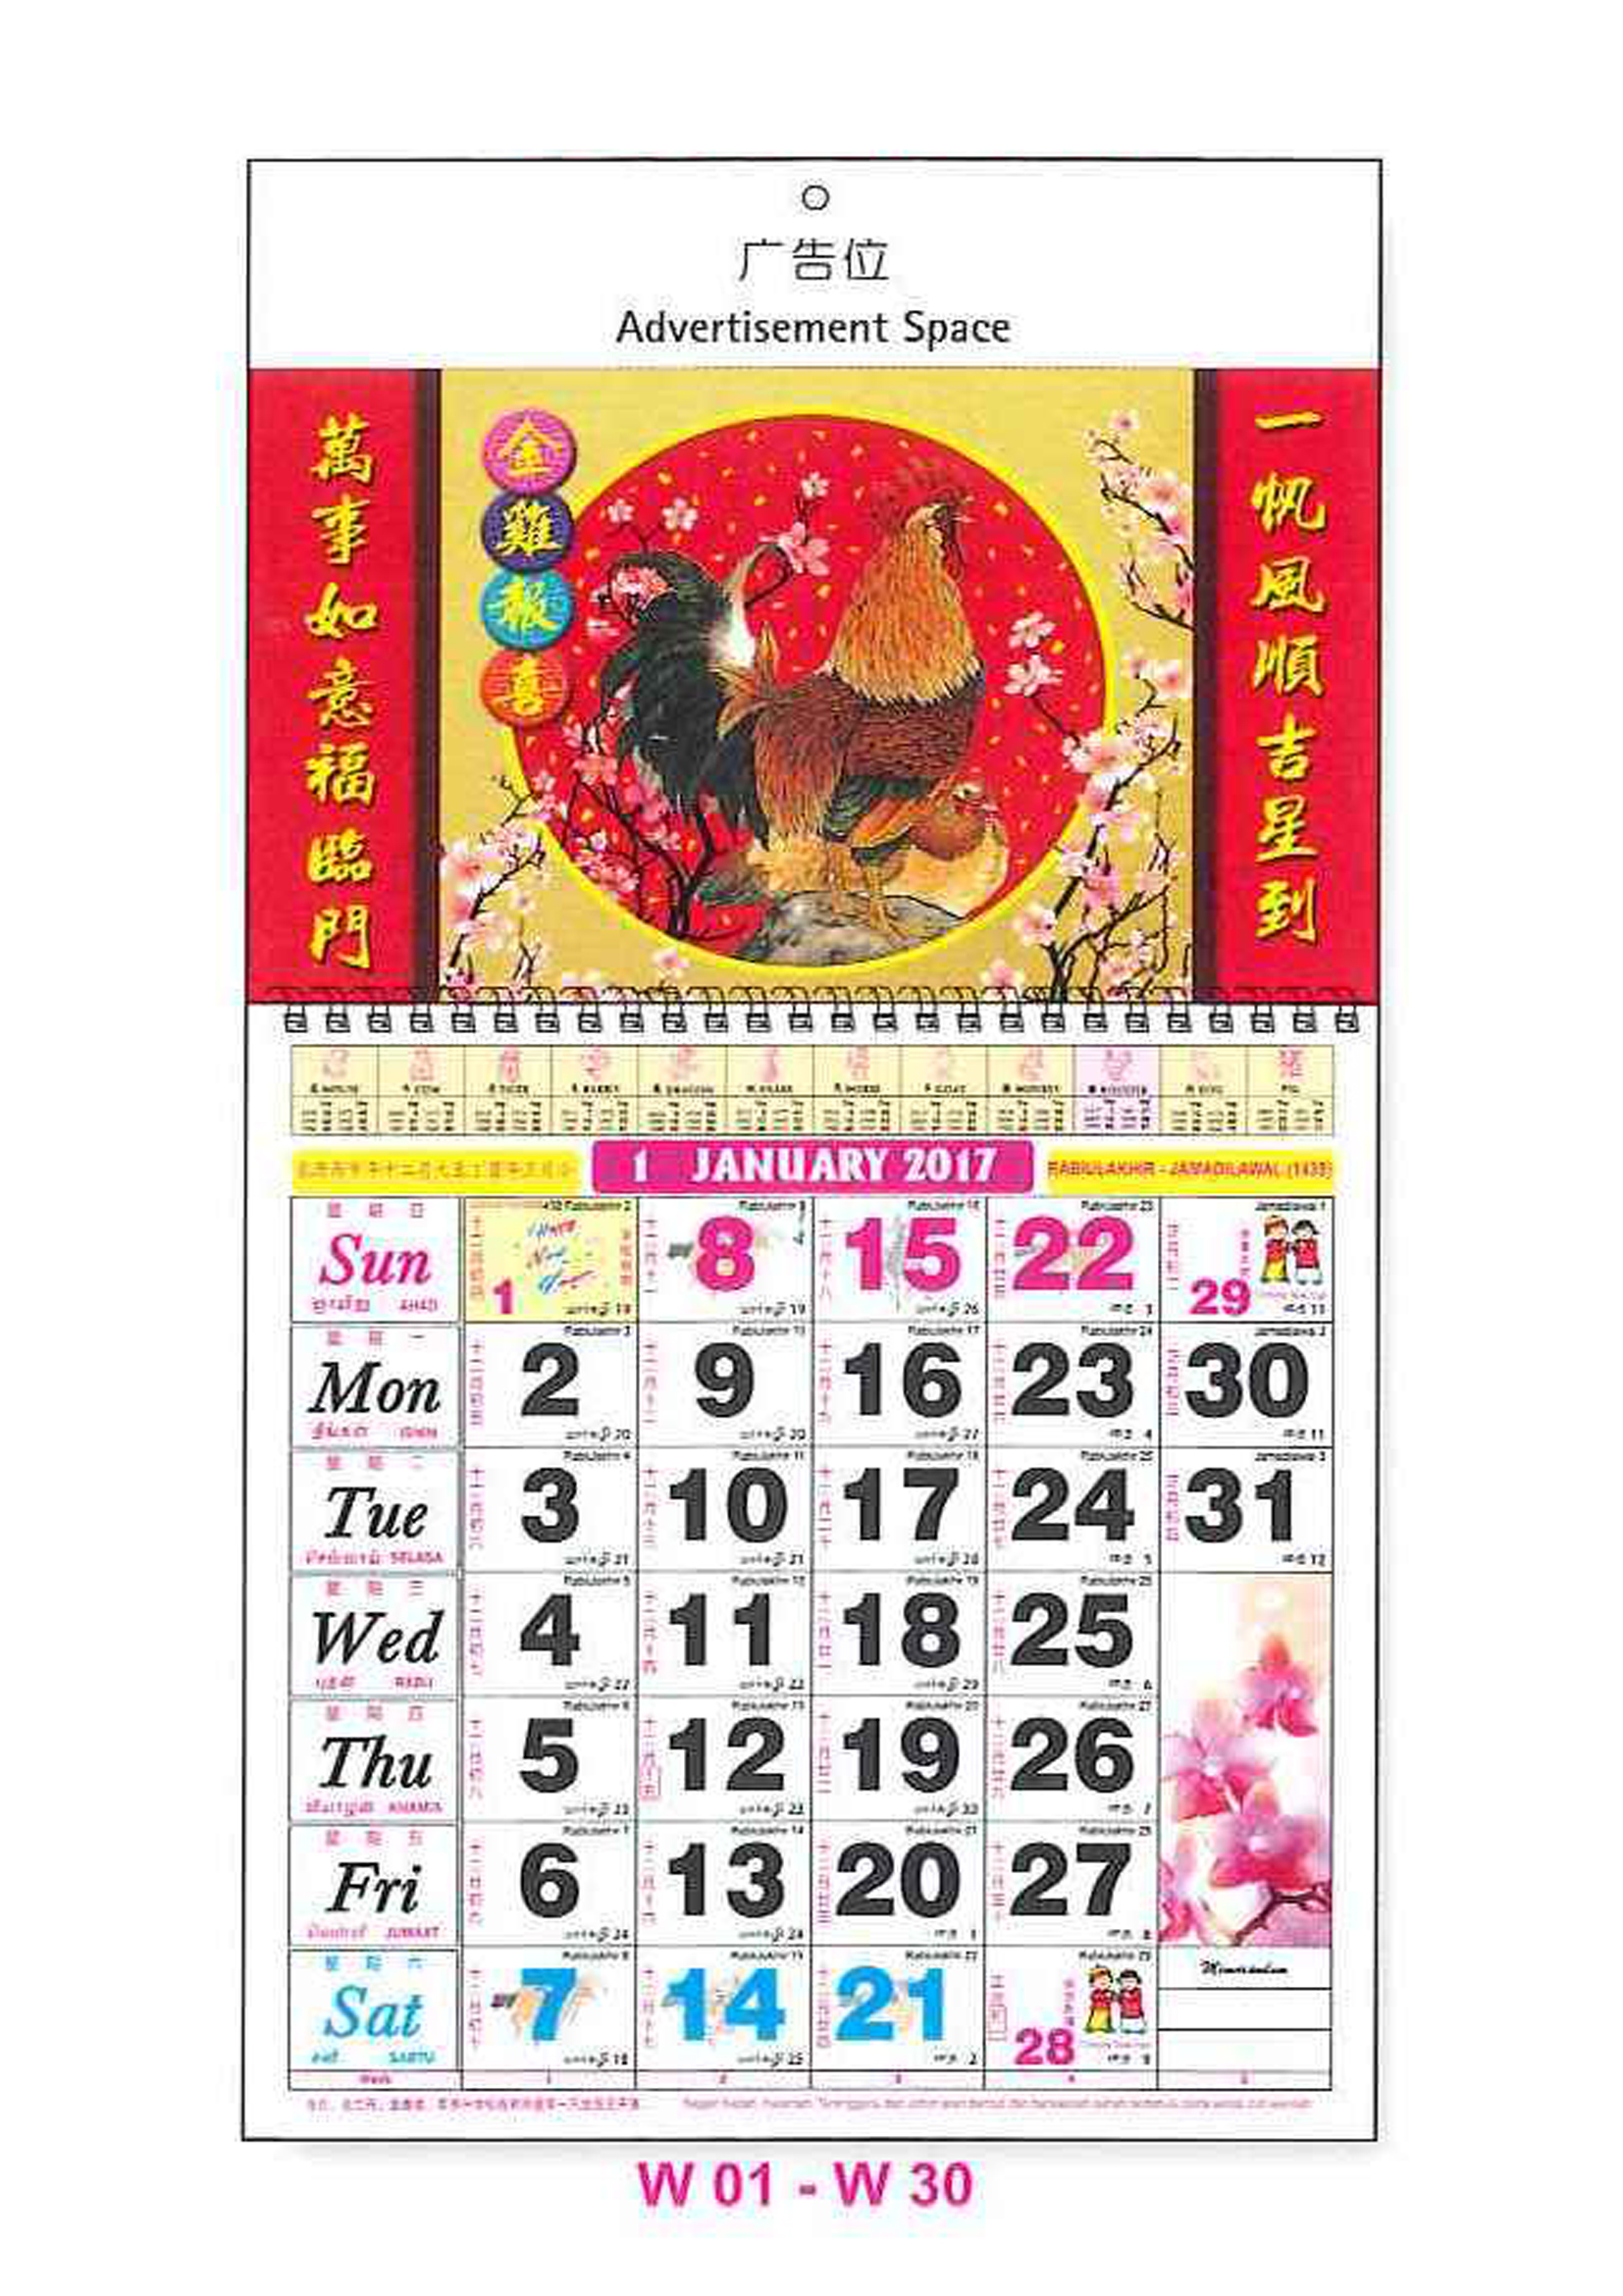 wire-o-racing-horse-calendar